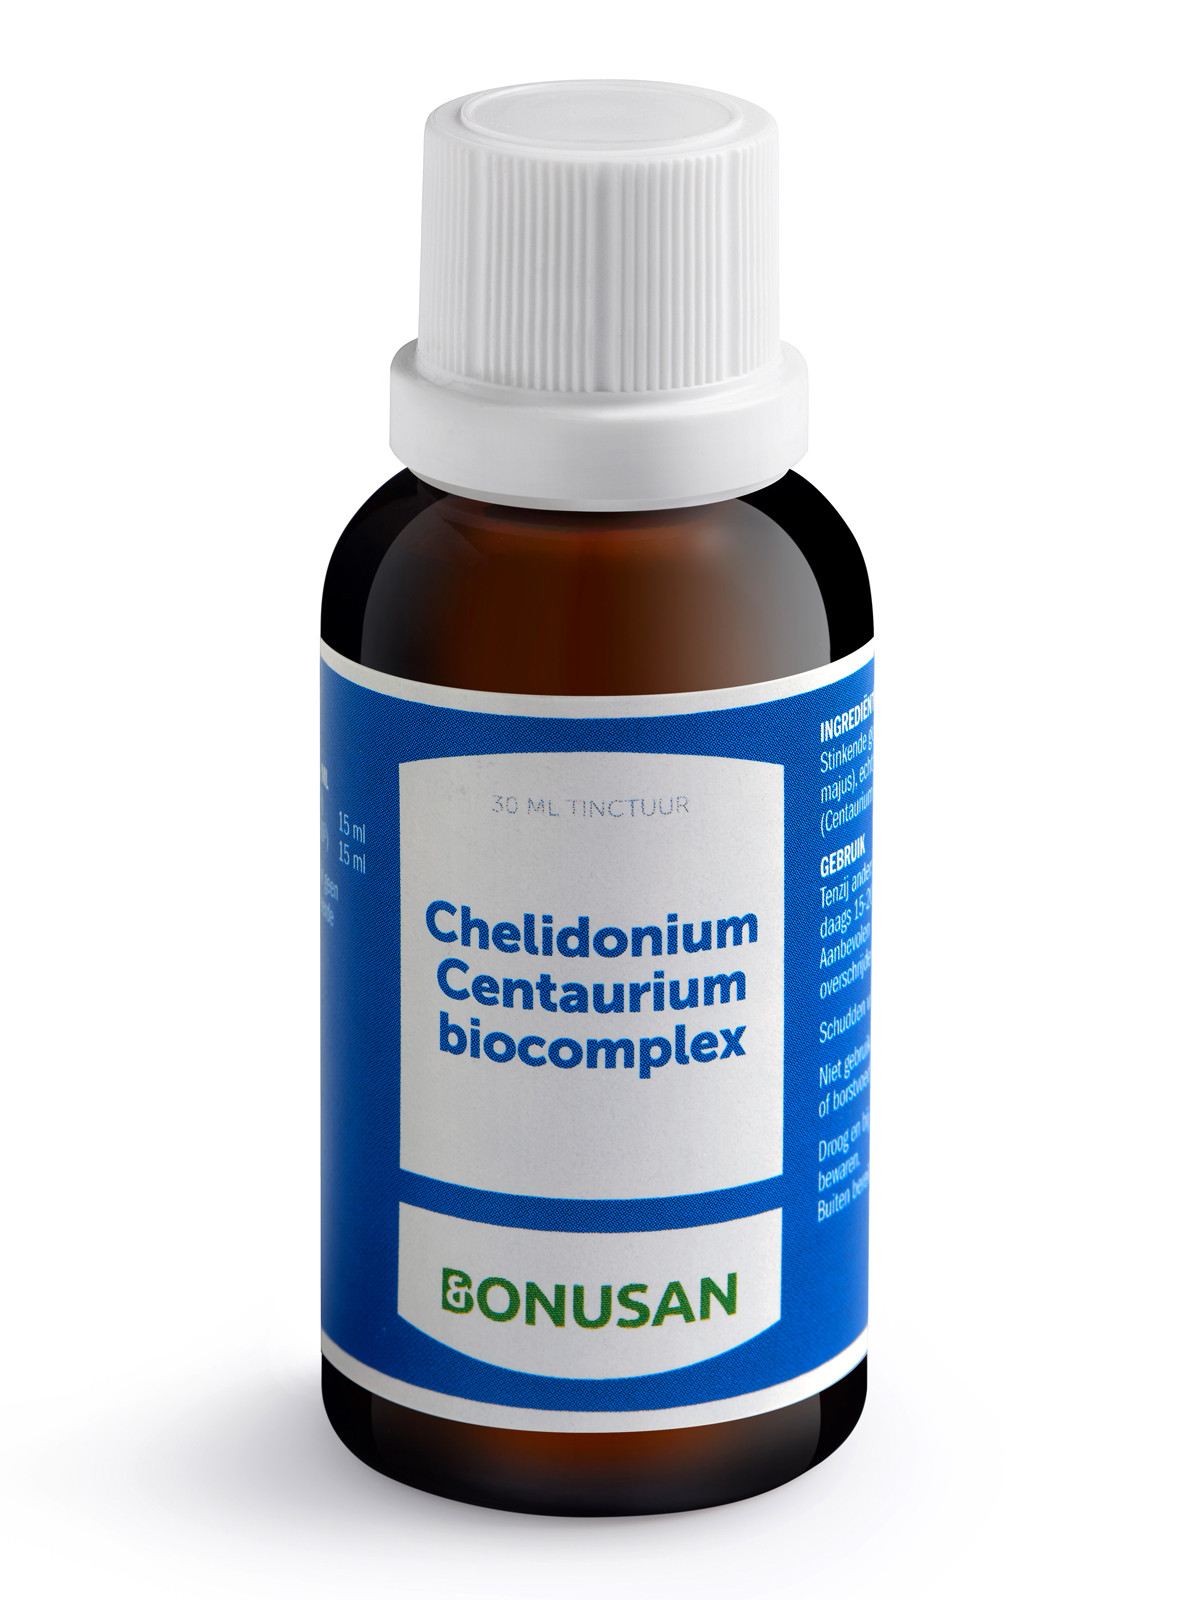 Chelidonium Centaurium biocomplex